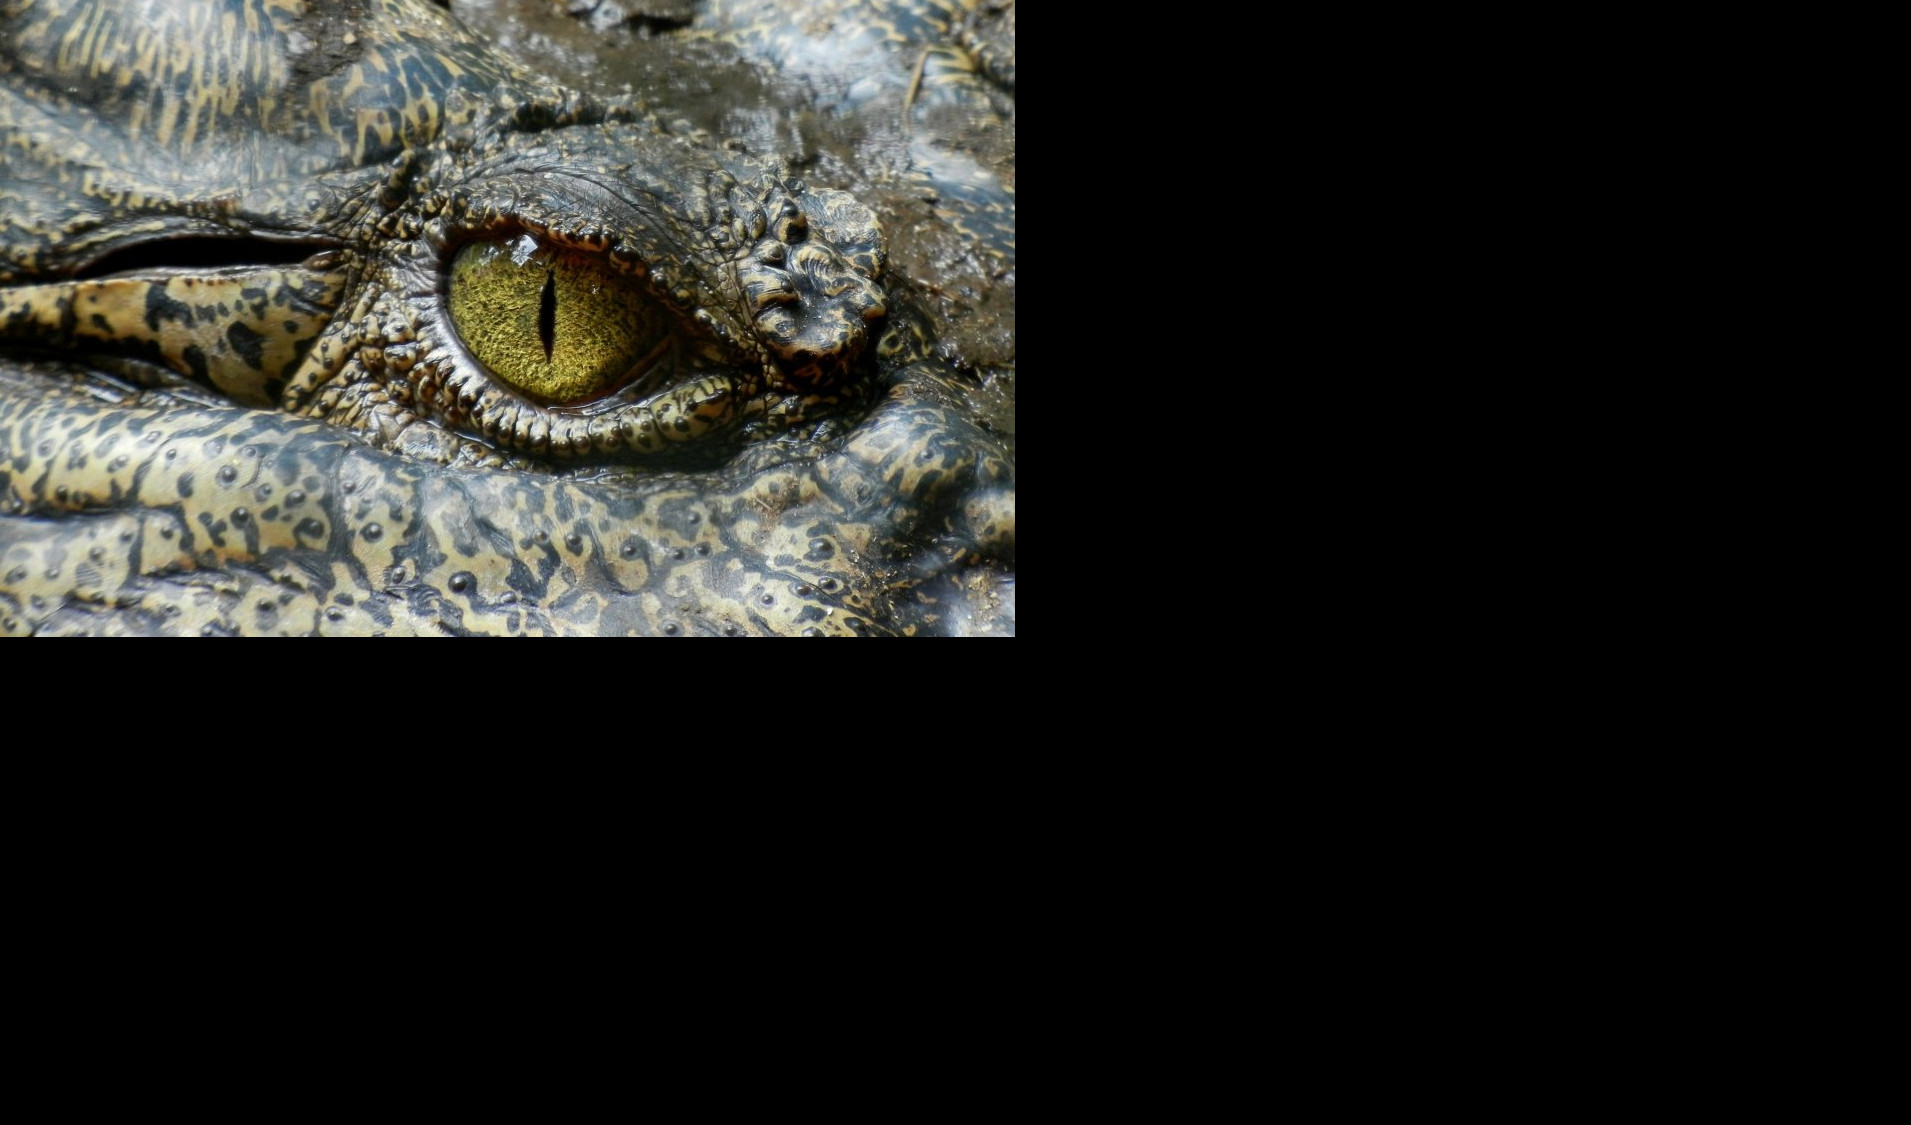 ŠOK OTKRIĆE! U ostacima krokodila od pre 95 MILIONA godina pronađeno OVO - naučnici ne veruju svojim OČIMA (FOTO)